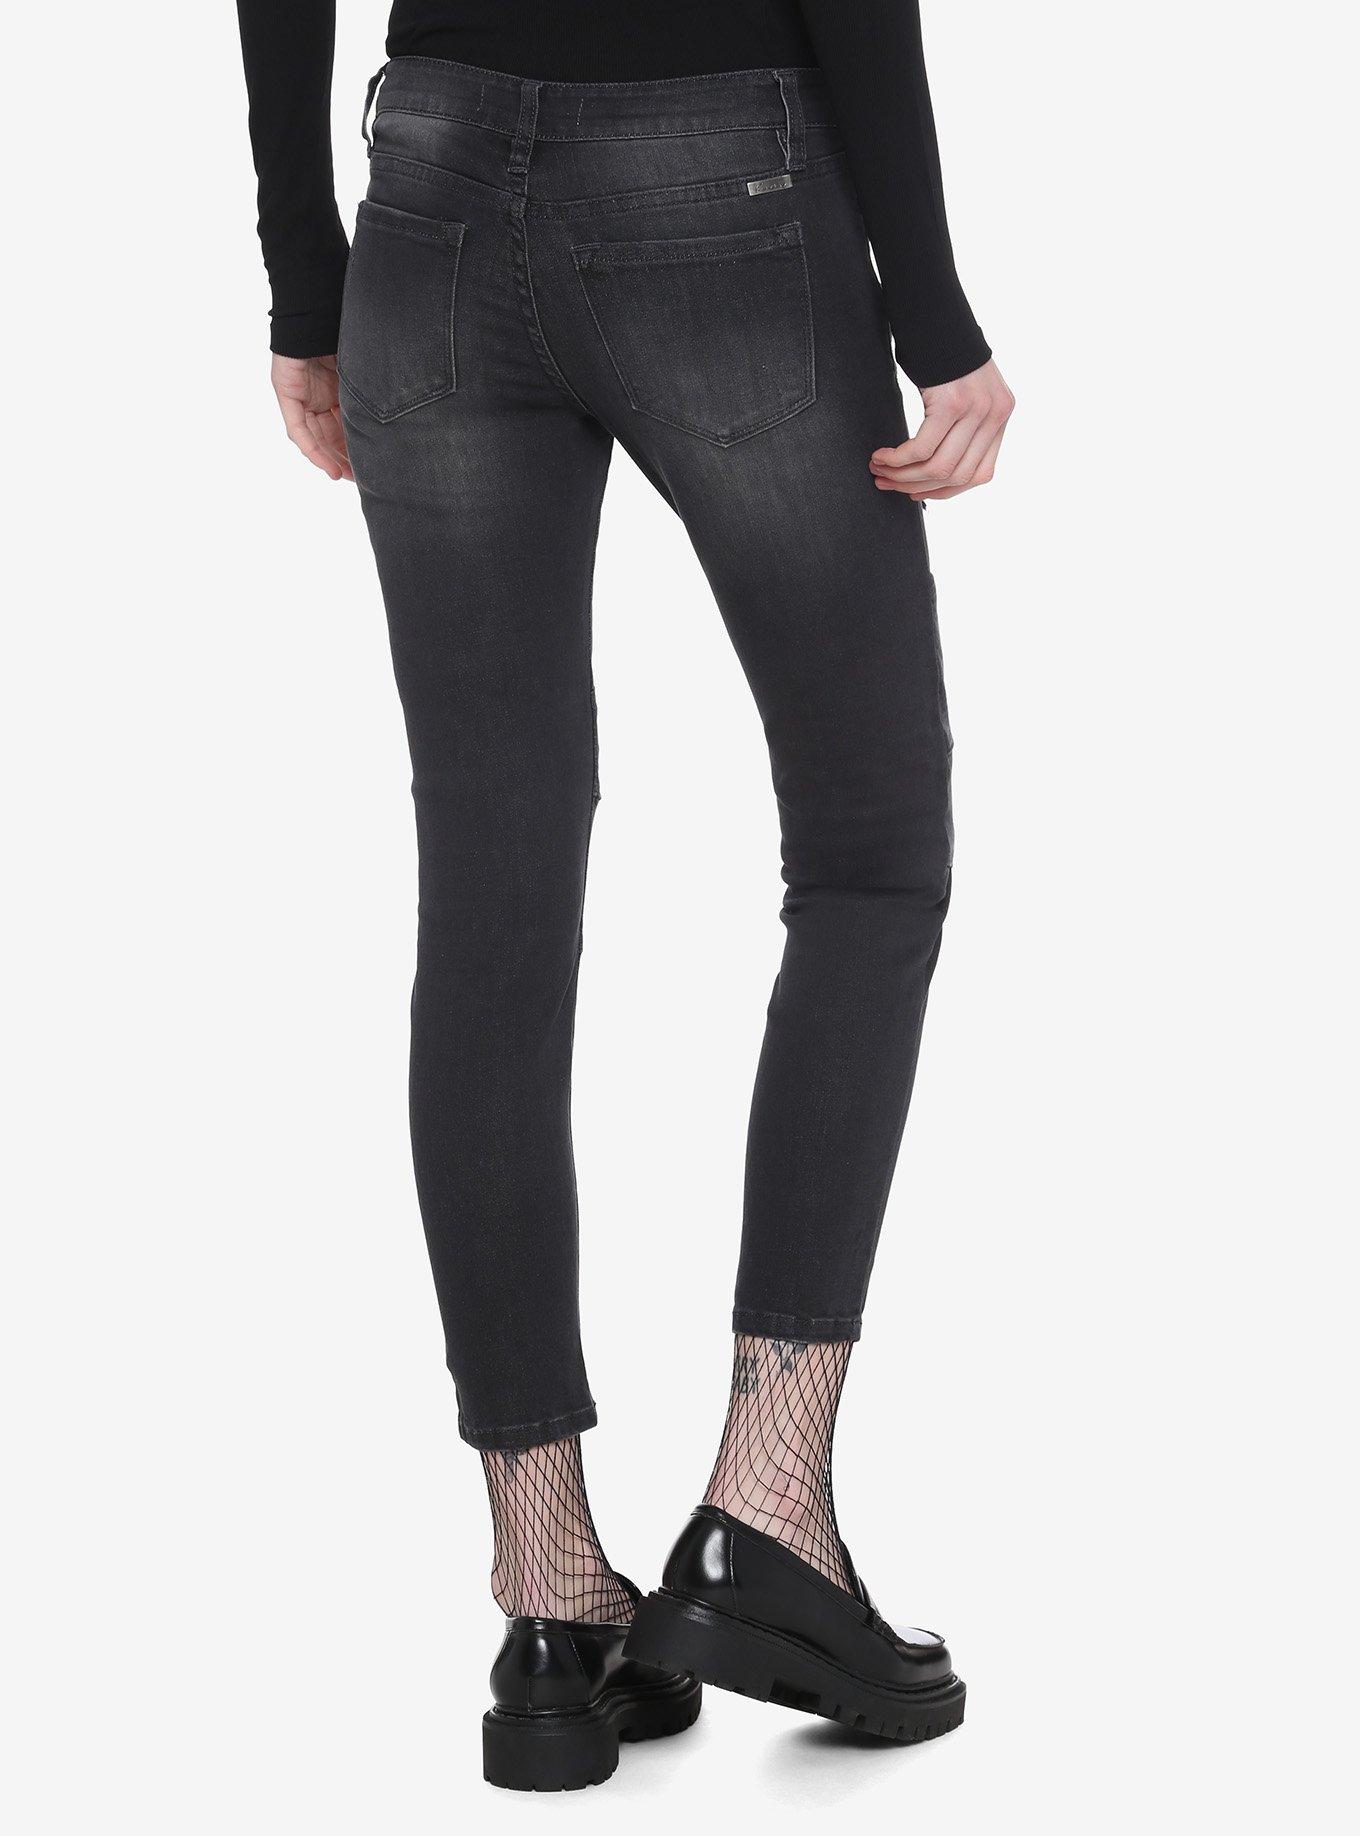 Black Destructed Moto Wash Crop Skinny Jeans, BLACK, alternate